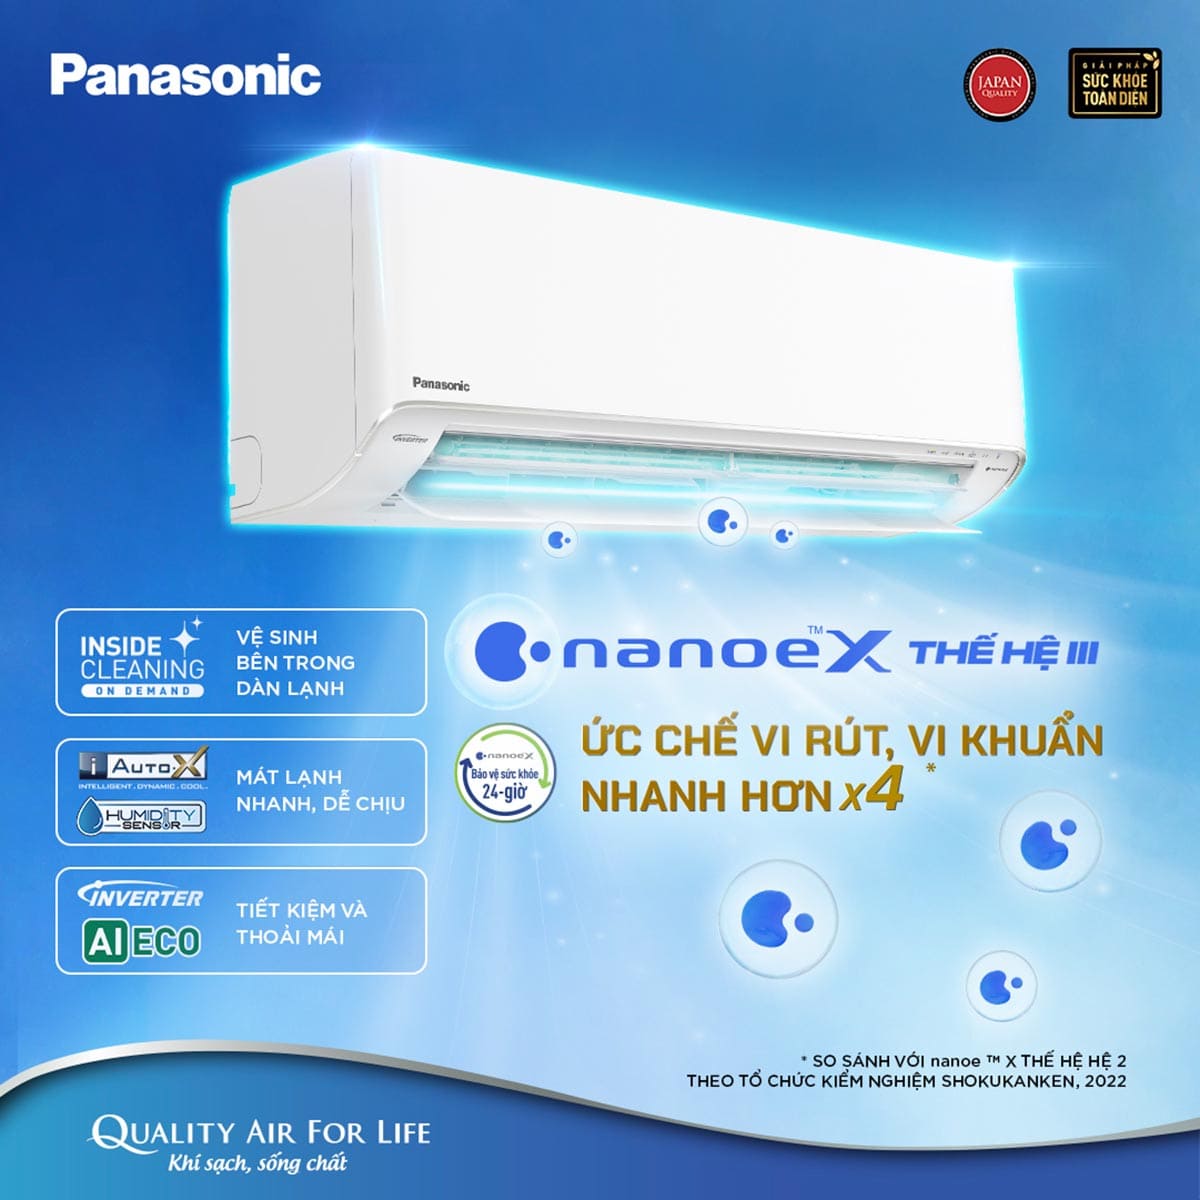 Máy mức giá Panasonic được người tiêu dùng tin cậy tưởng lựa chọn